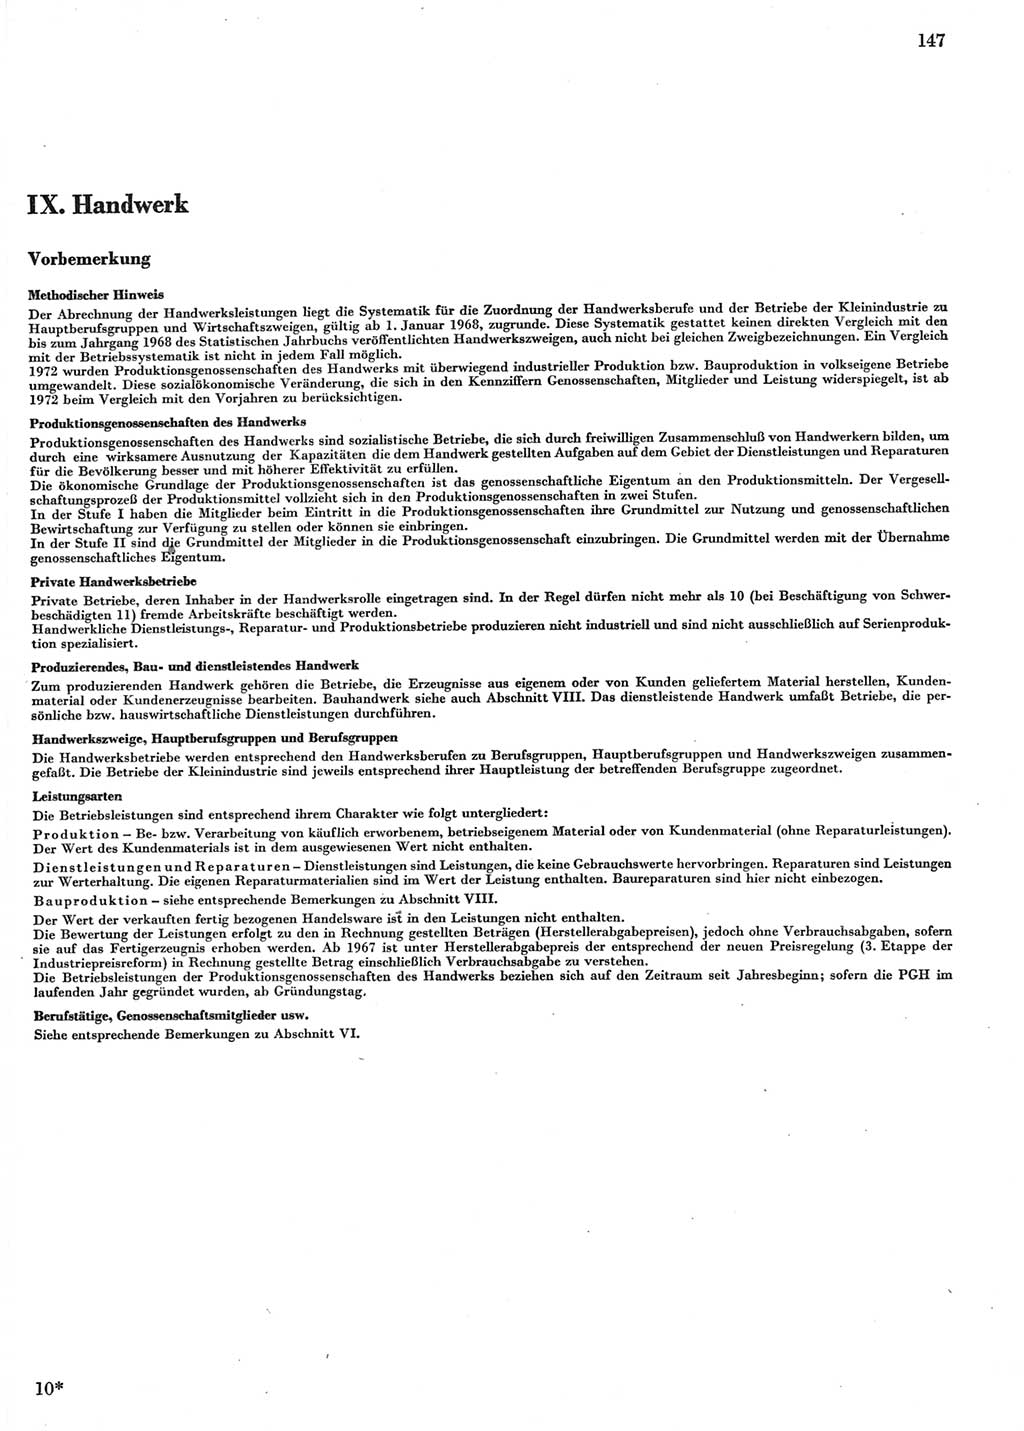 Statistisches Jahrbuch der Deutschen Demokratischen Republik (DDR) 1978, Seite 147 (Stat. Jb. DDR 1978, S. 147)